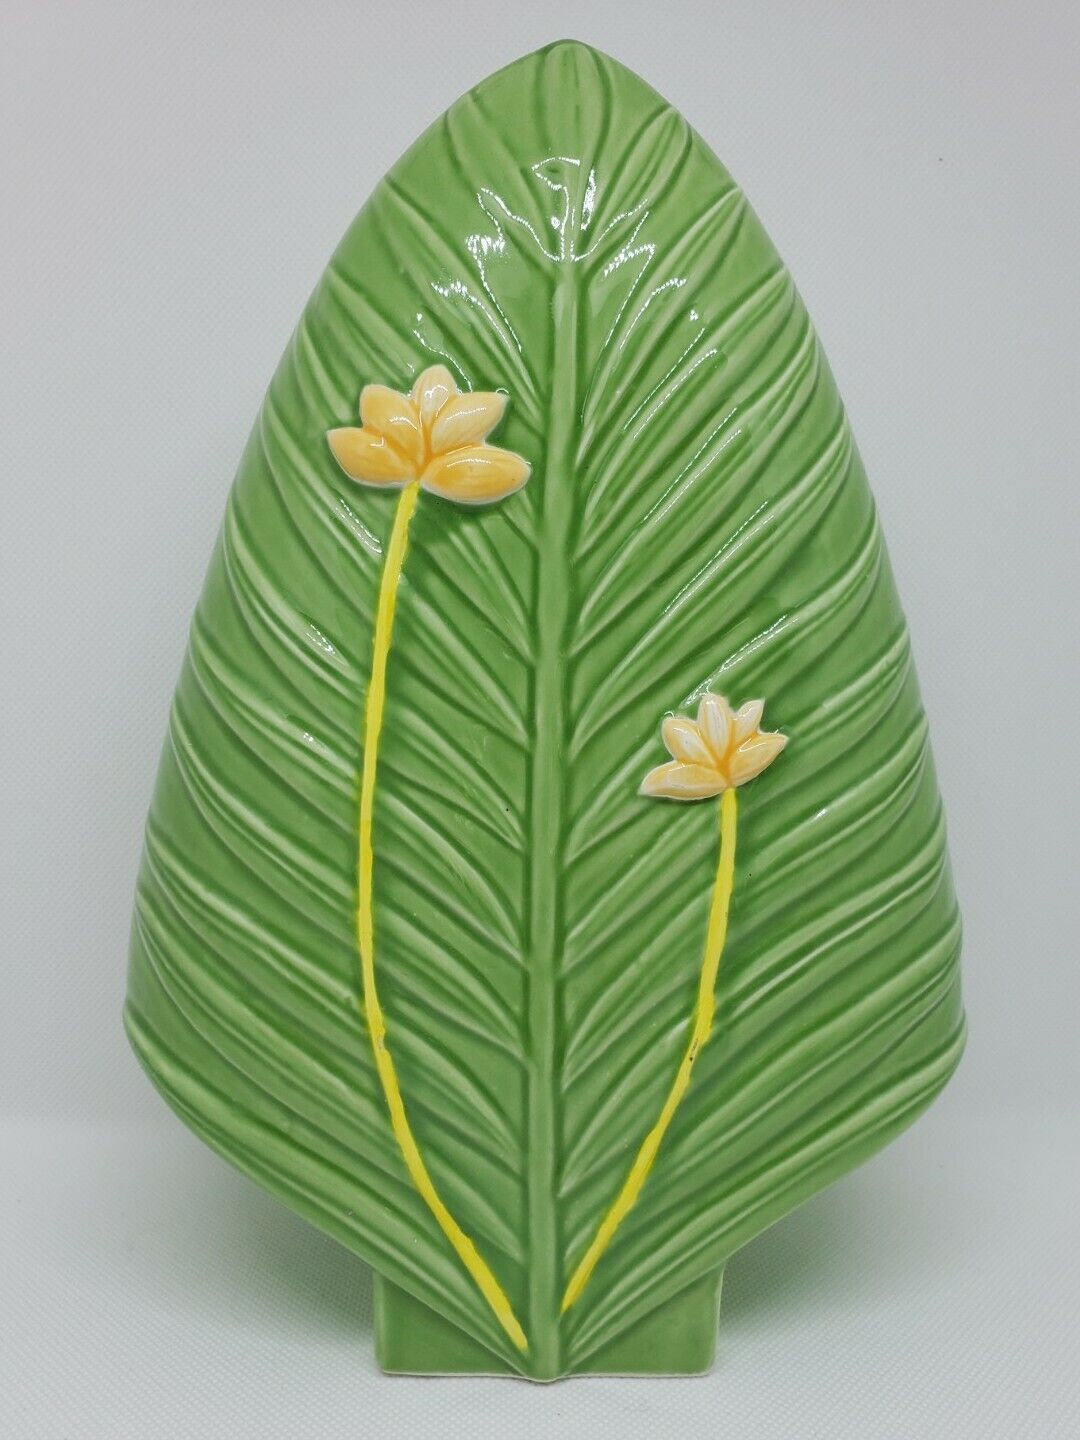 MCM Vintage Seymour Mann Taiwan Porcelain Assymetric Vase Floral Green Palm EUC 